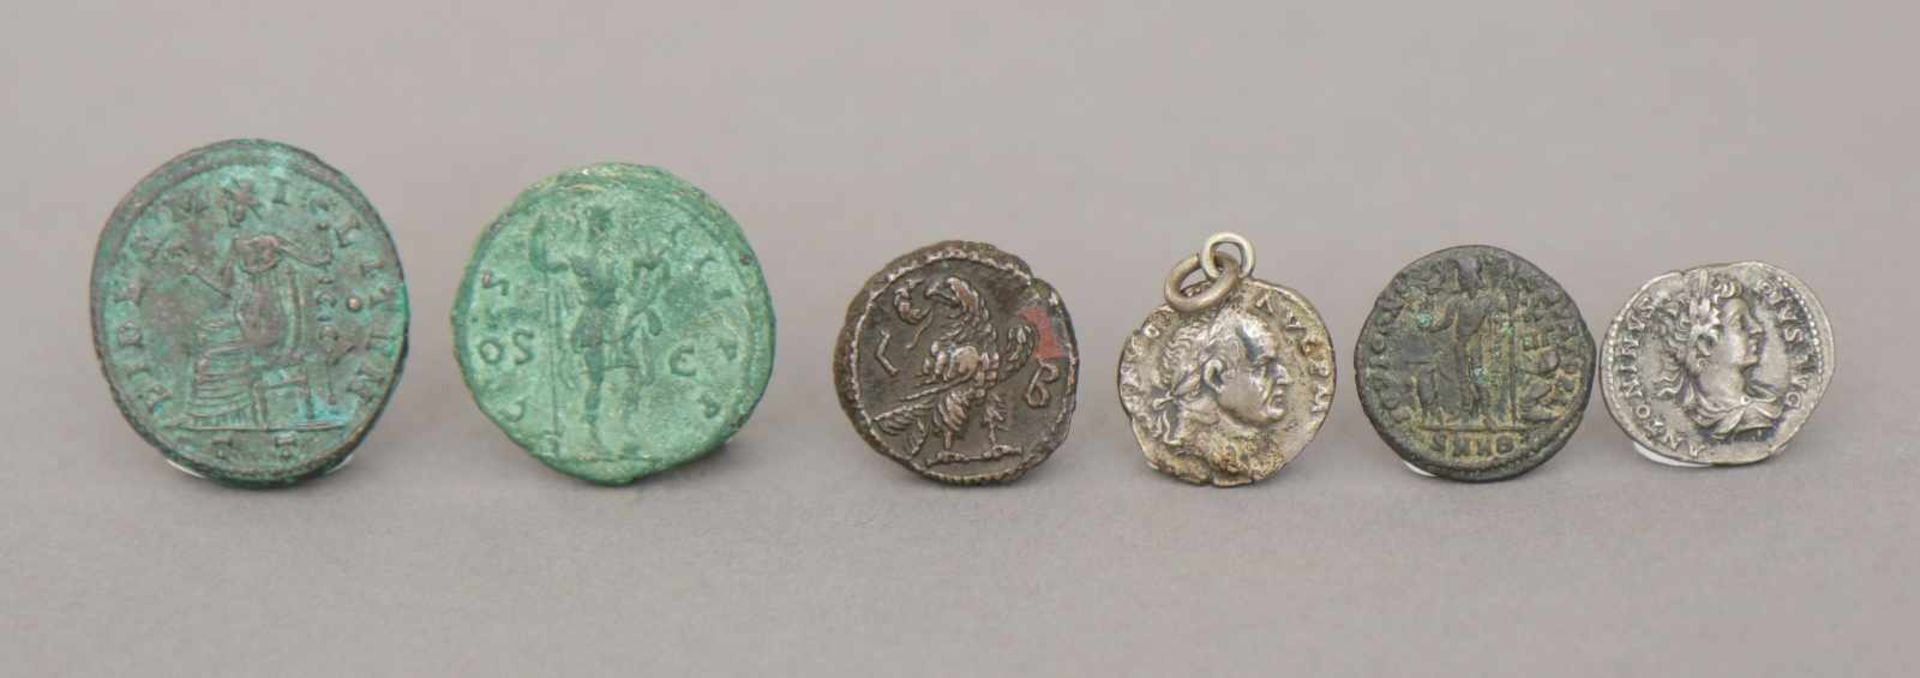 6 antike Münzen (römisch und griechisch)u.a. Hadrianus Augustus (ca. 120 n. Chr.), Maxiamus